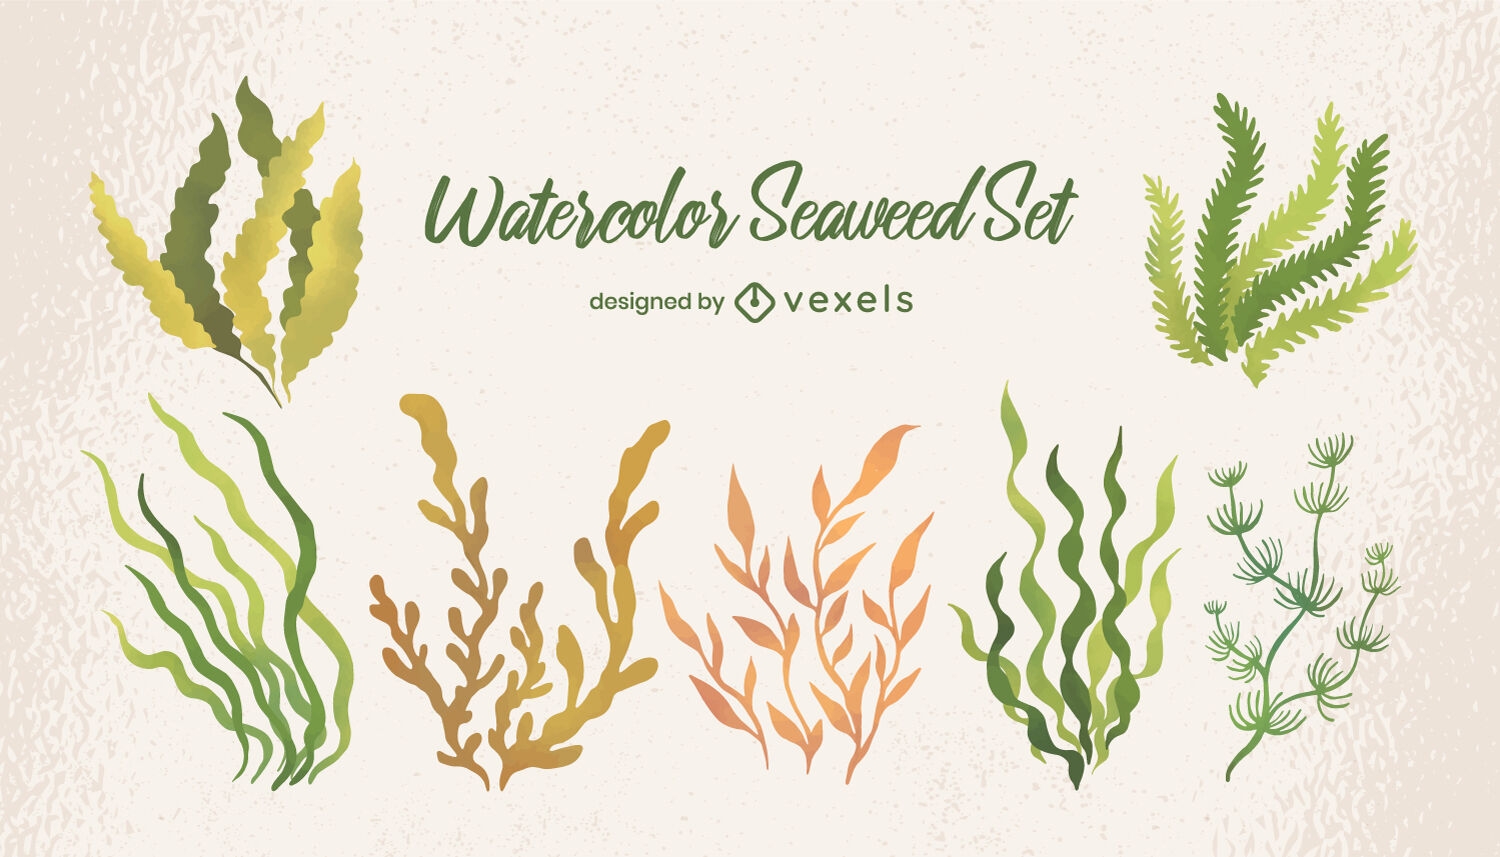 Seaweed and underwater plants watercolor set